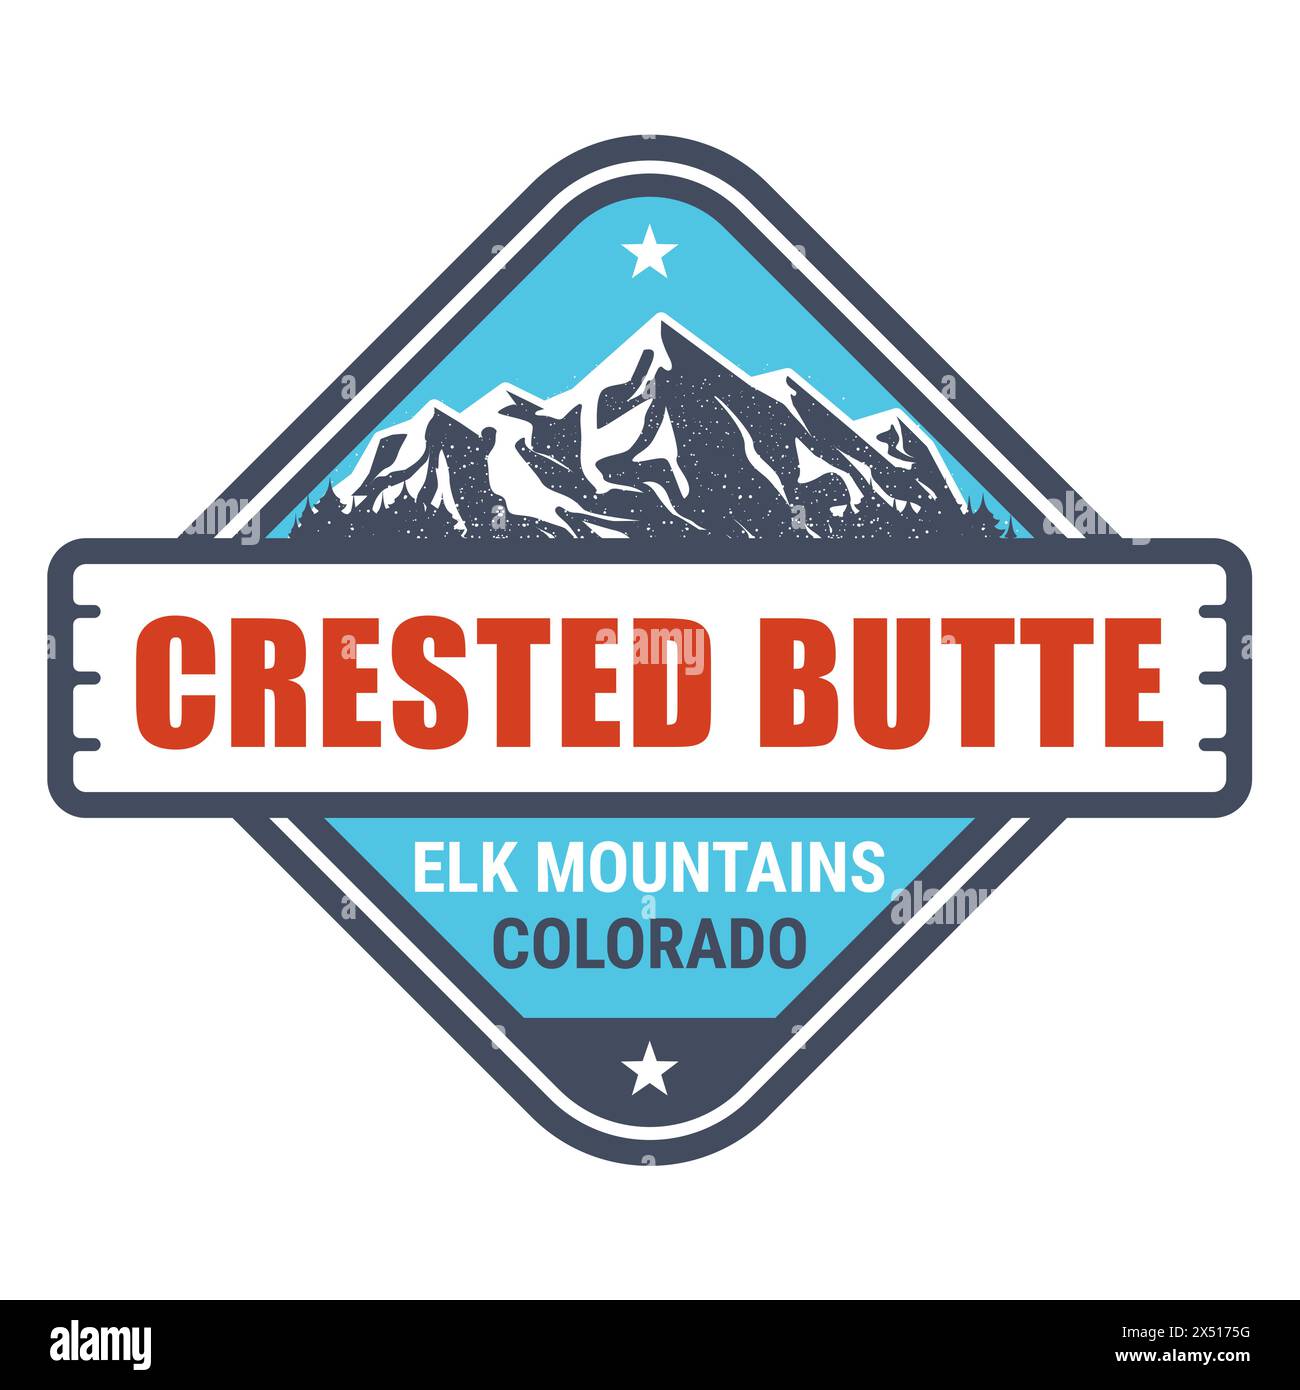 Crested Butte, Colorado - francobollo del resort sulle Elk Mountains, emblema con roccia innevata, vettoriale Illustrazione Vettoriale